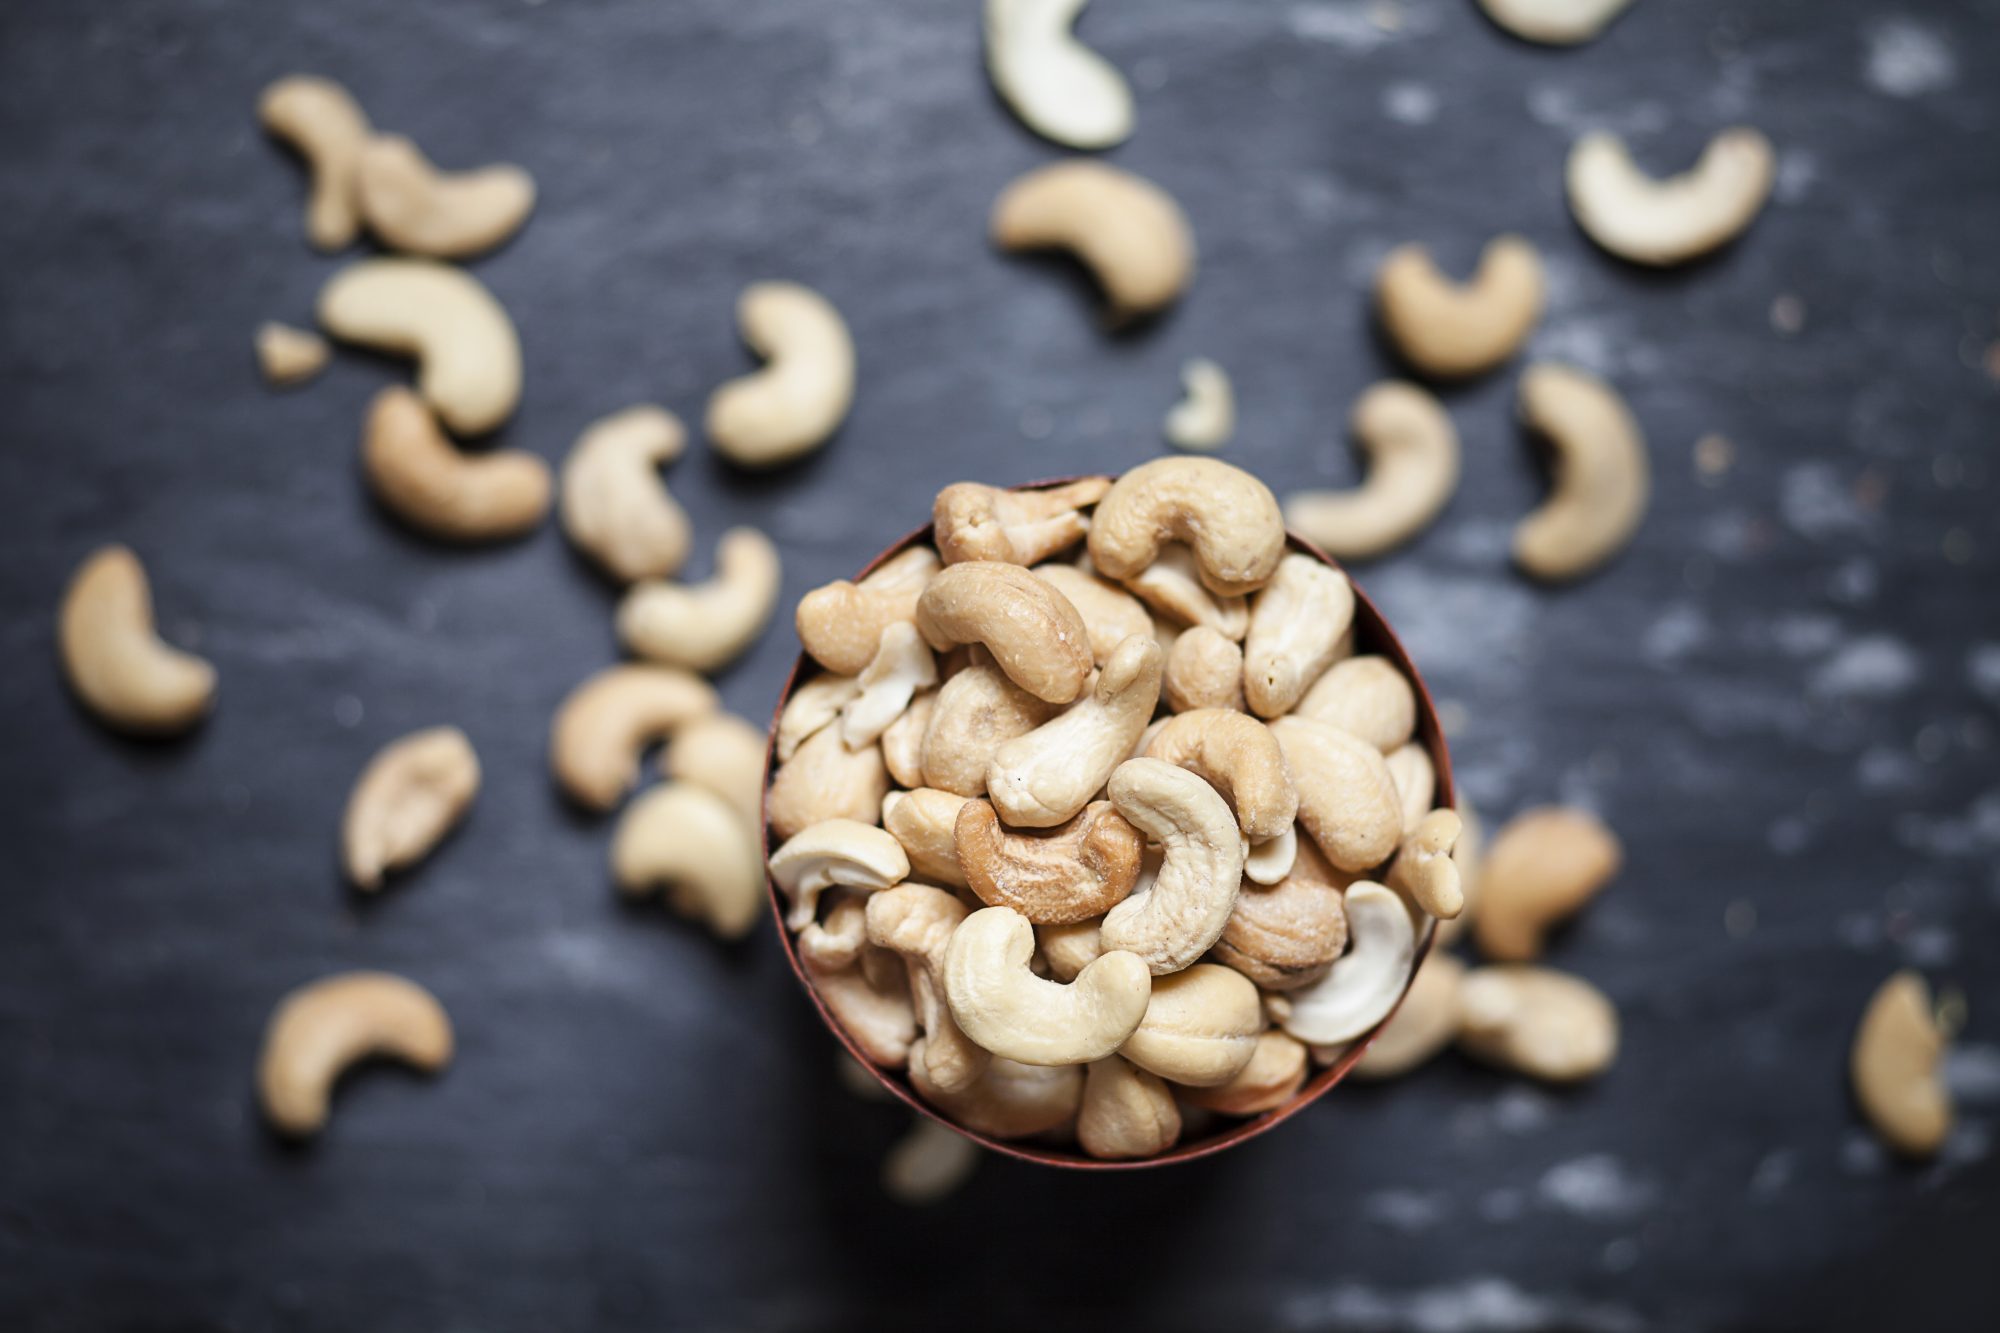 Image of cashews